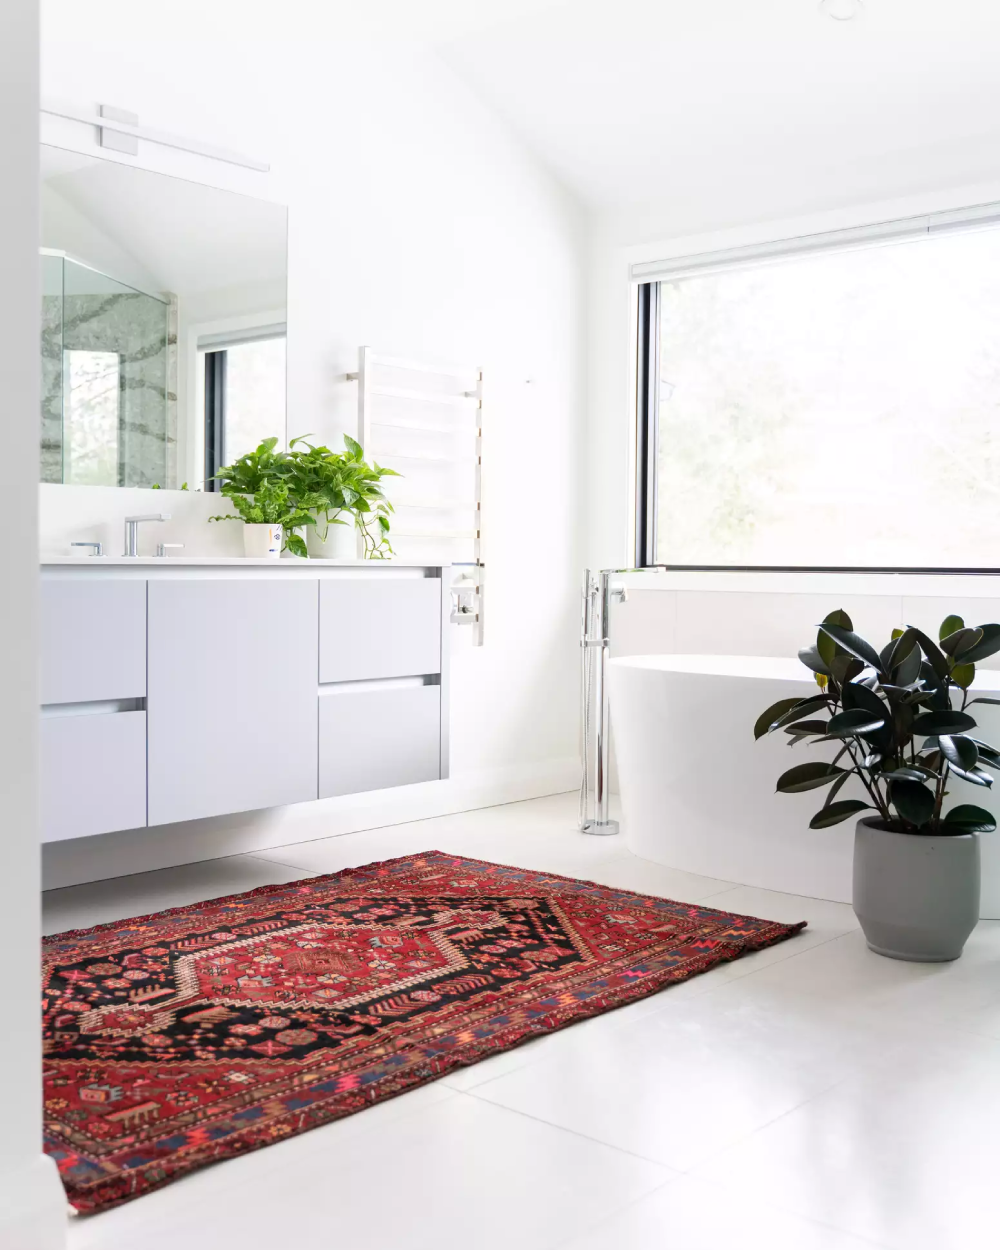 Phòng tắm rộng rãi màu trắng với thảm đỏ và cây cối